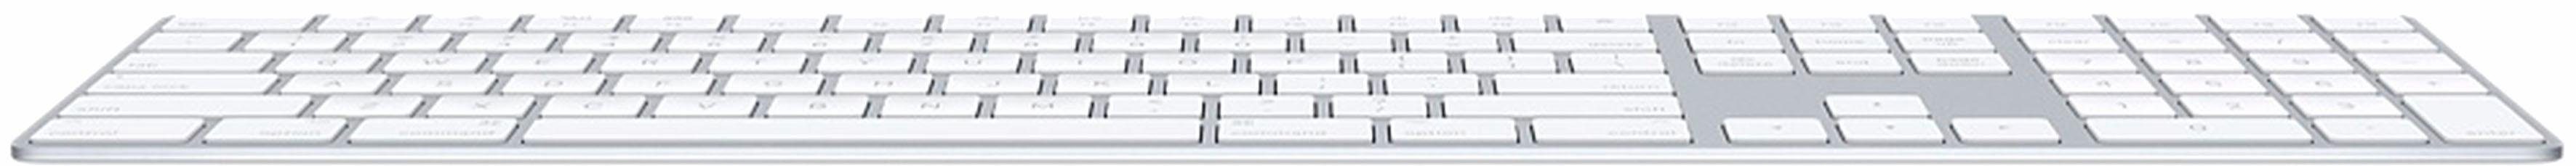 Apple Magic Keyboard Apple-Tastatur MQ052D/A